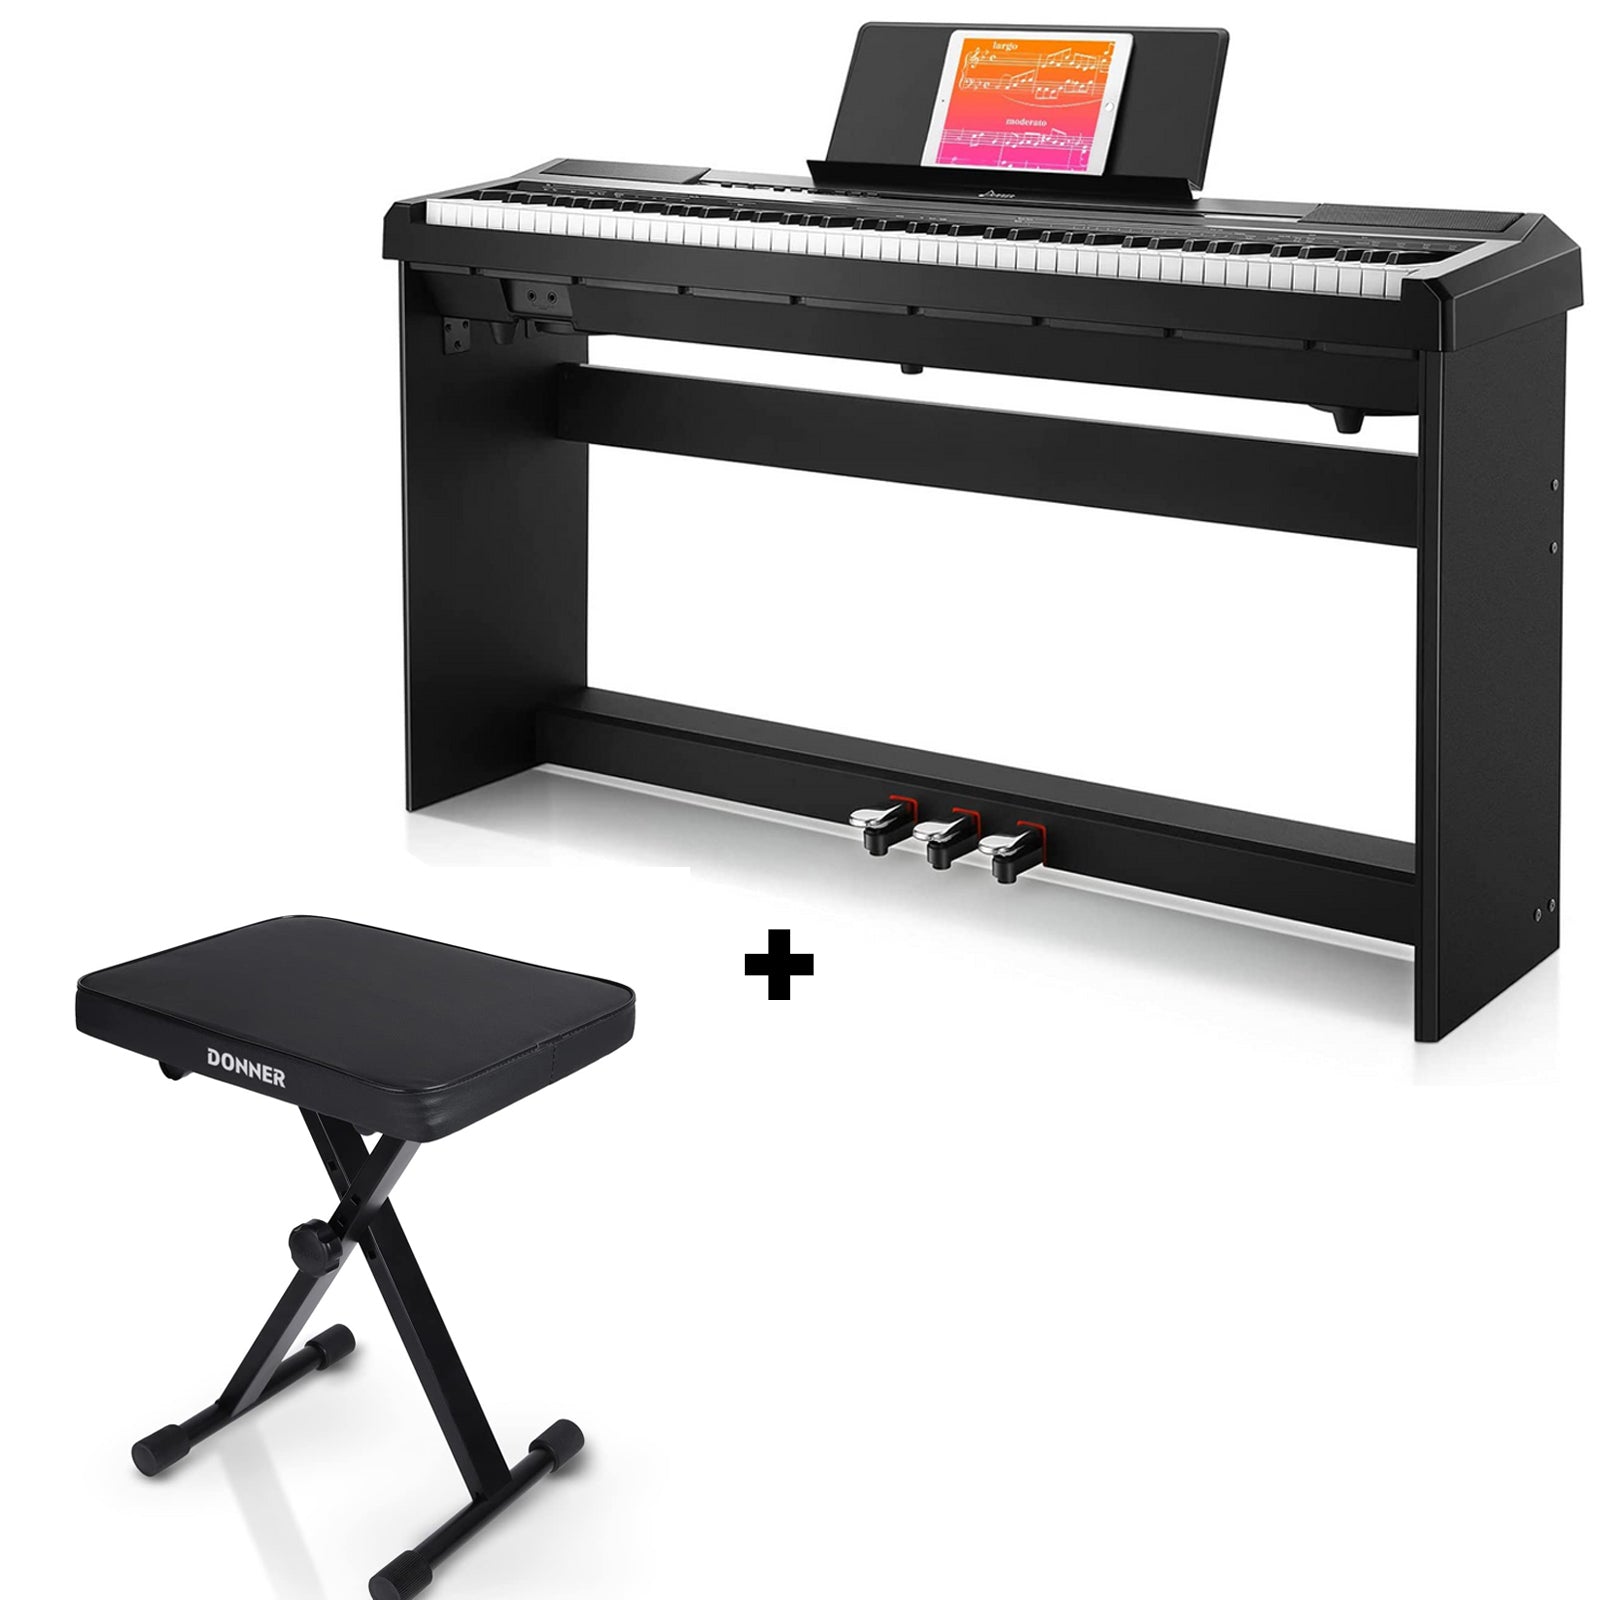 Donner DEP-10 Digitalpiano mit 88 halbgewichteten Tasten Keyboard Set - Piano + X-Förmig Klavierhocker von Donner